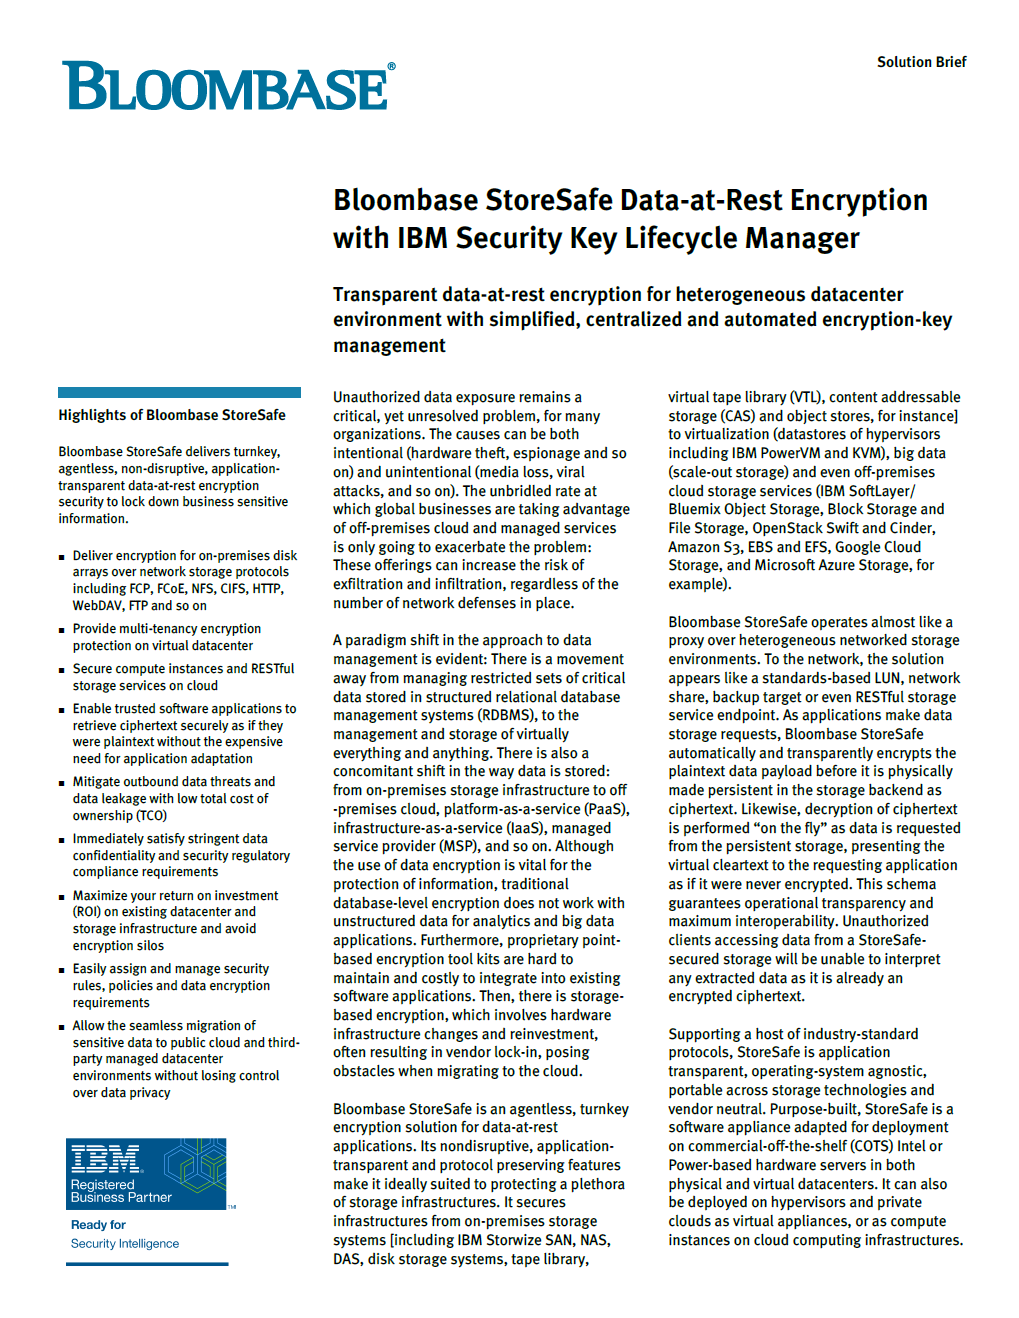 Bloombase StoreSafe IBM SKLM Solution Brief